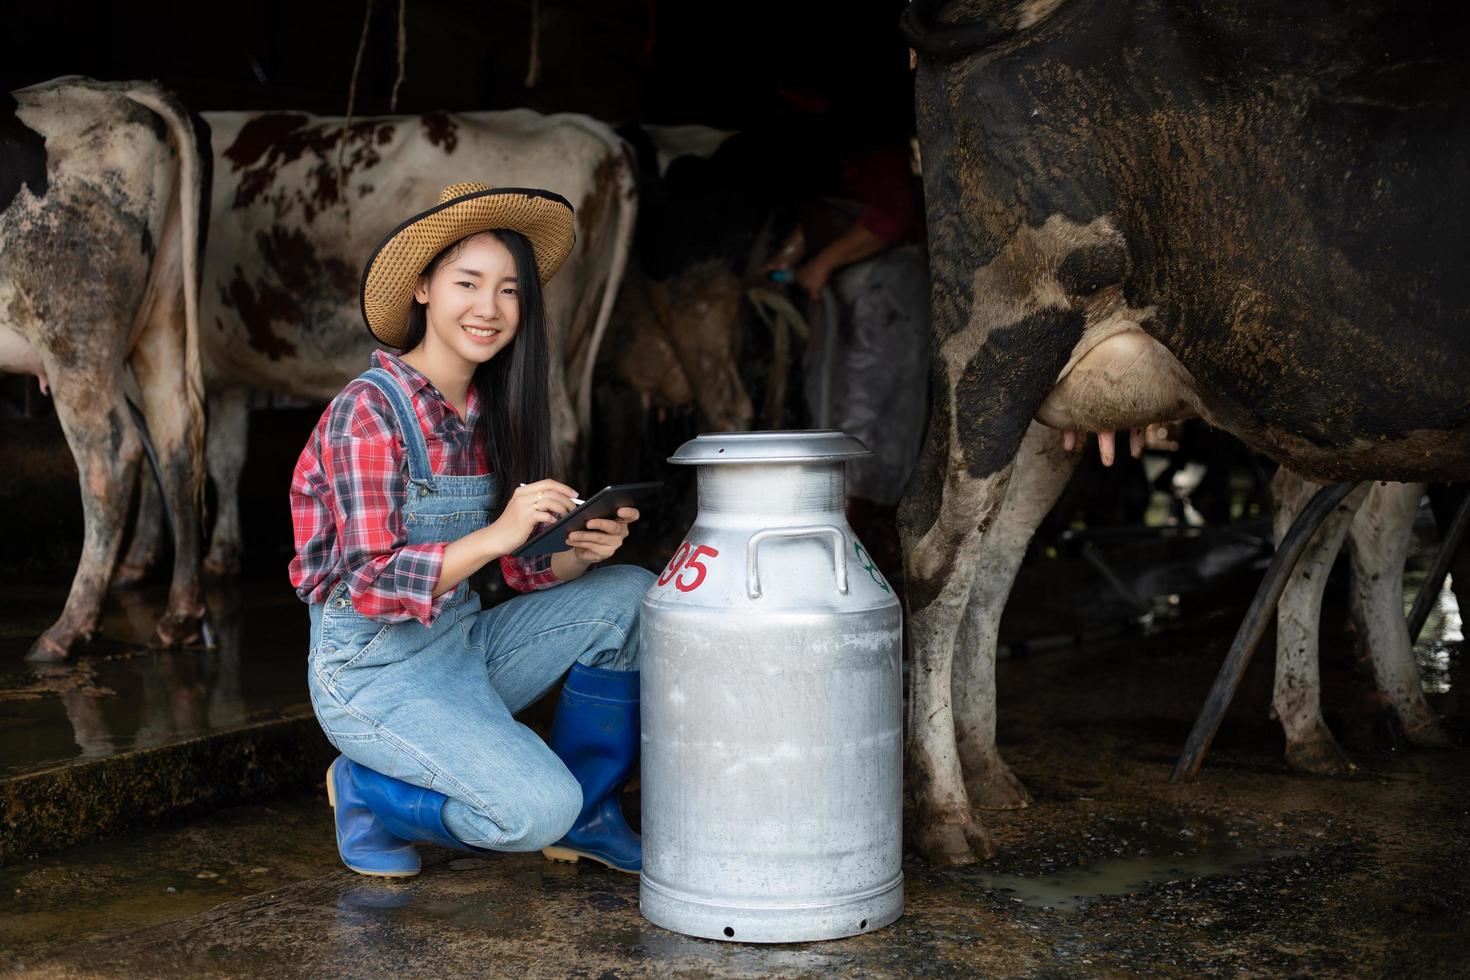 Aziatische vrouwen landbouw en landbouw industrie en veeteelt concept - jonge vrouwen of boer met tablet pc-computer en koeien in de stal op melkveebedrijf met koeienmelkmachines foto